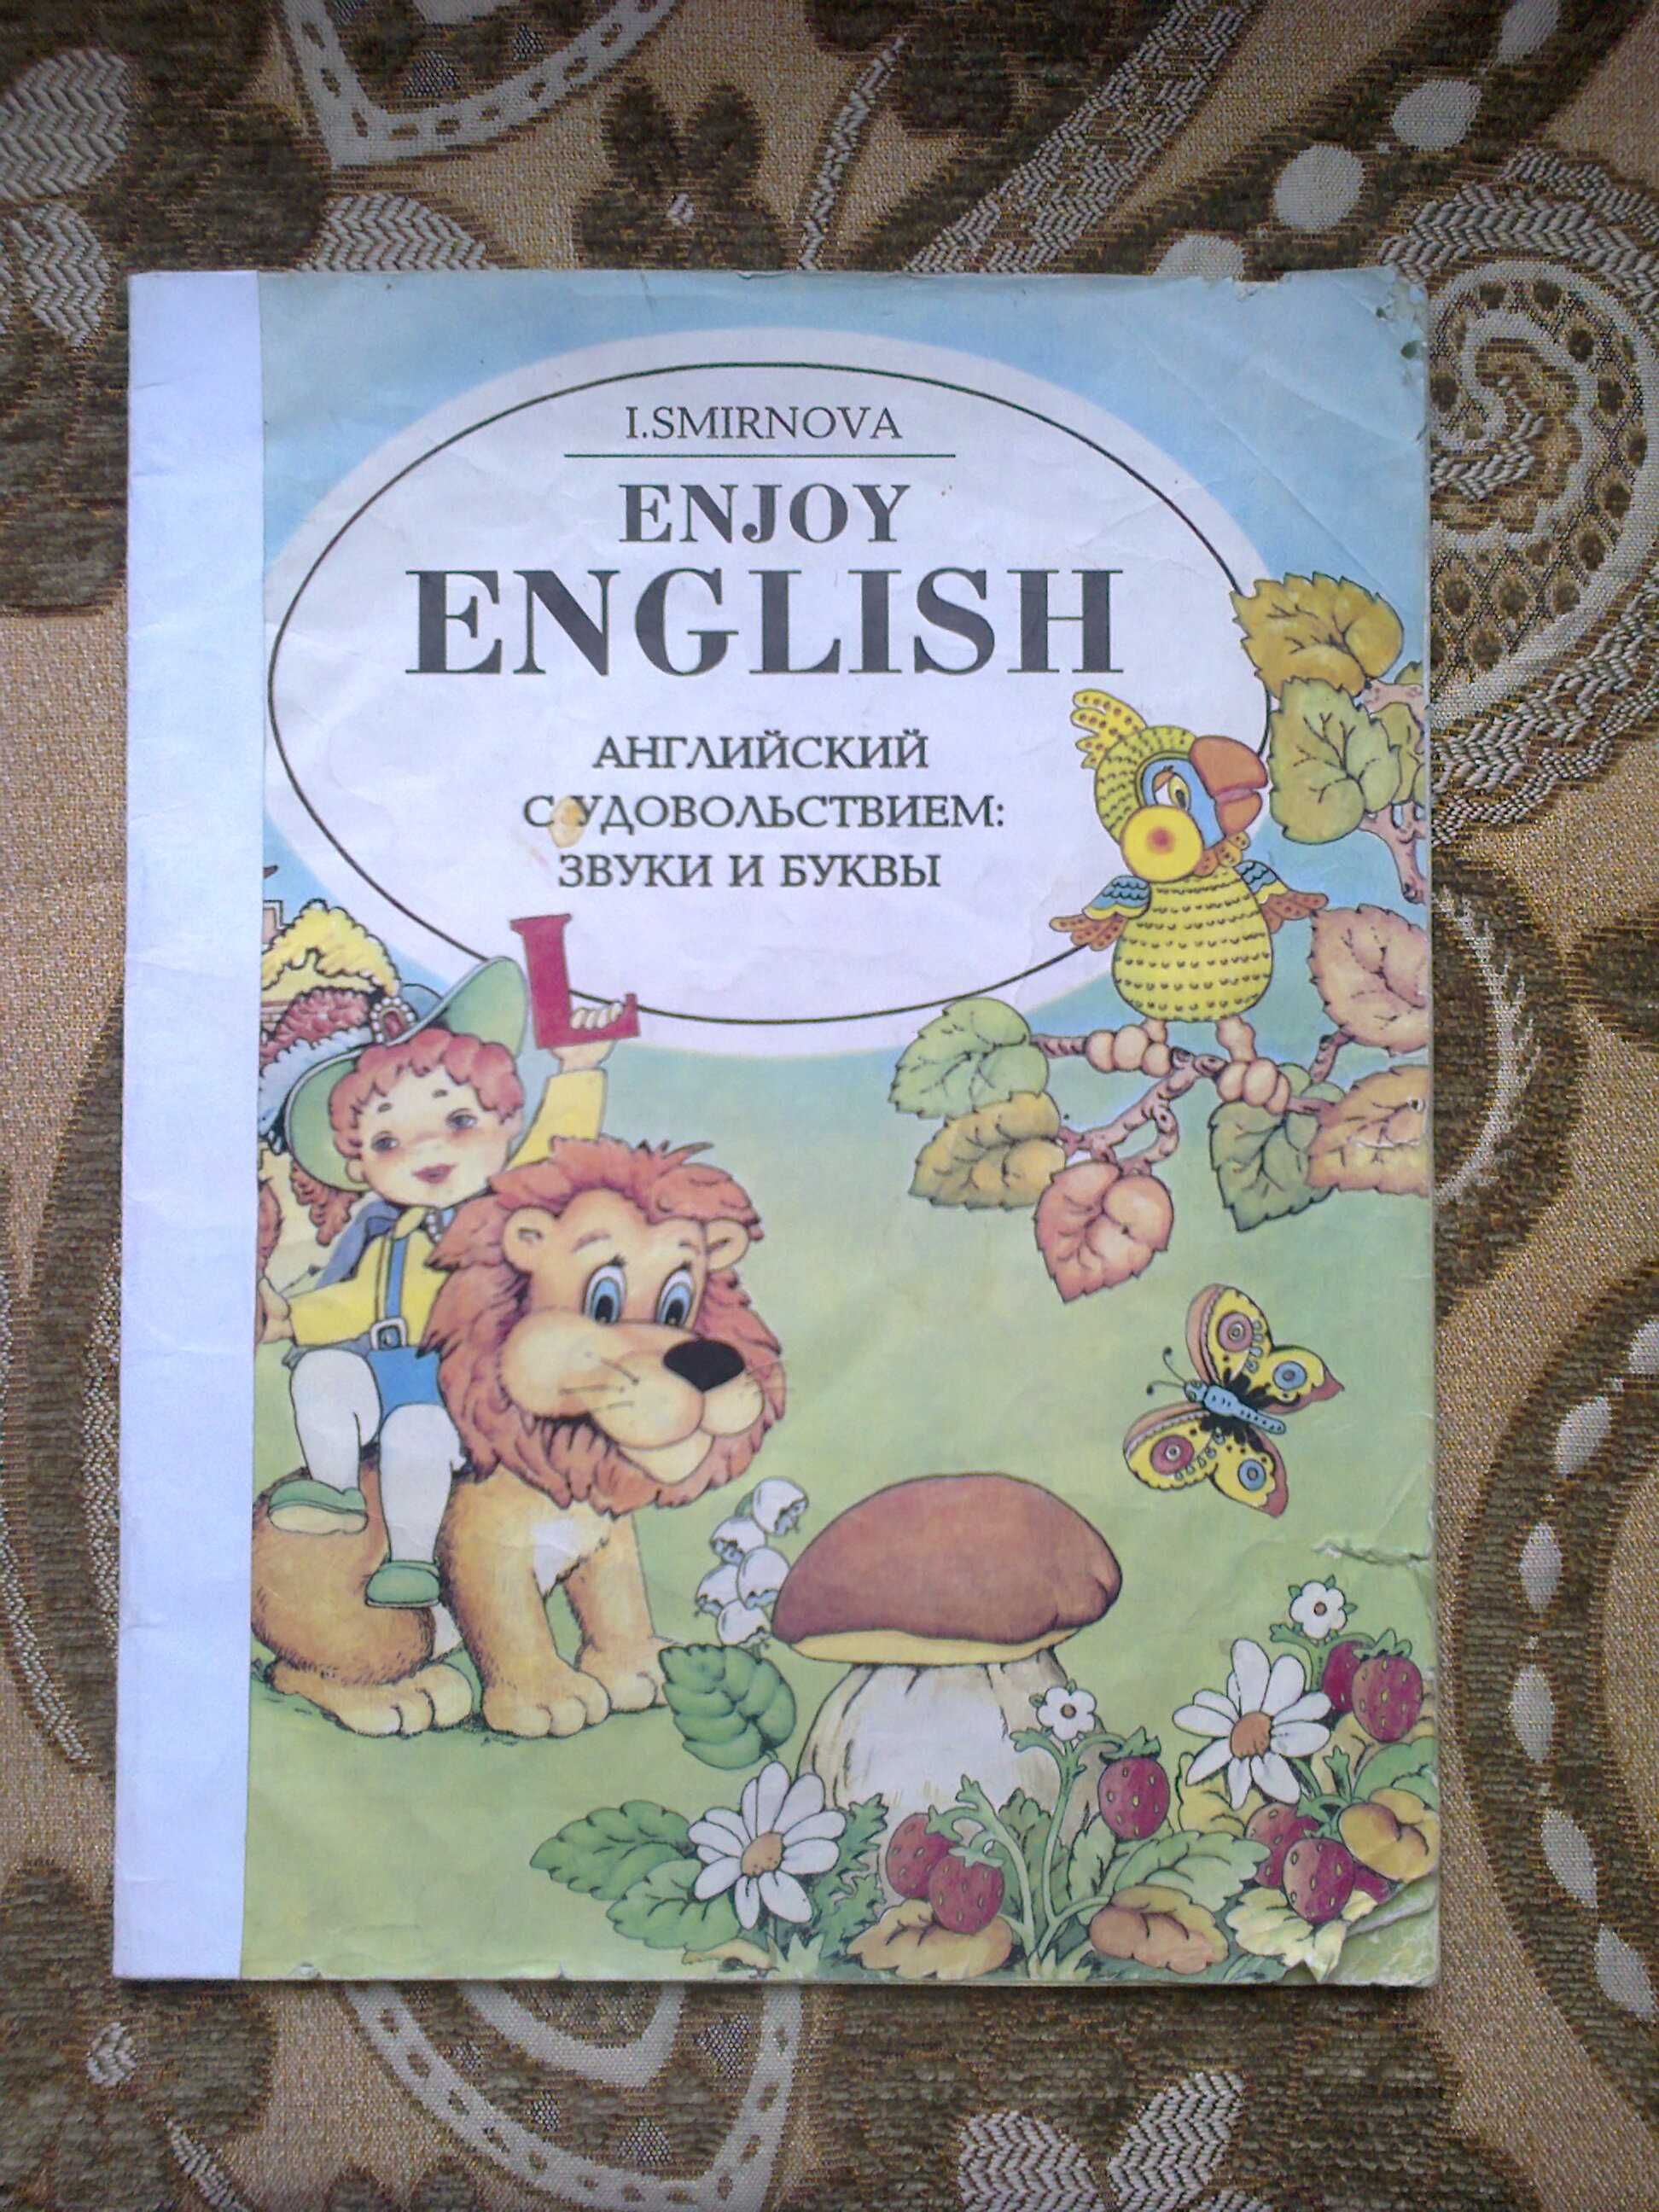 Учебники для подготовки к IELTS, английский детям